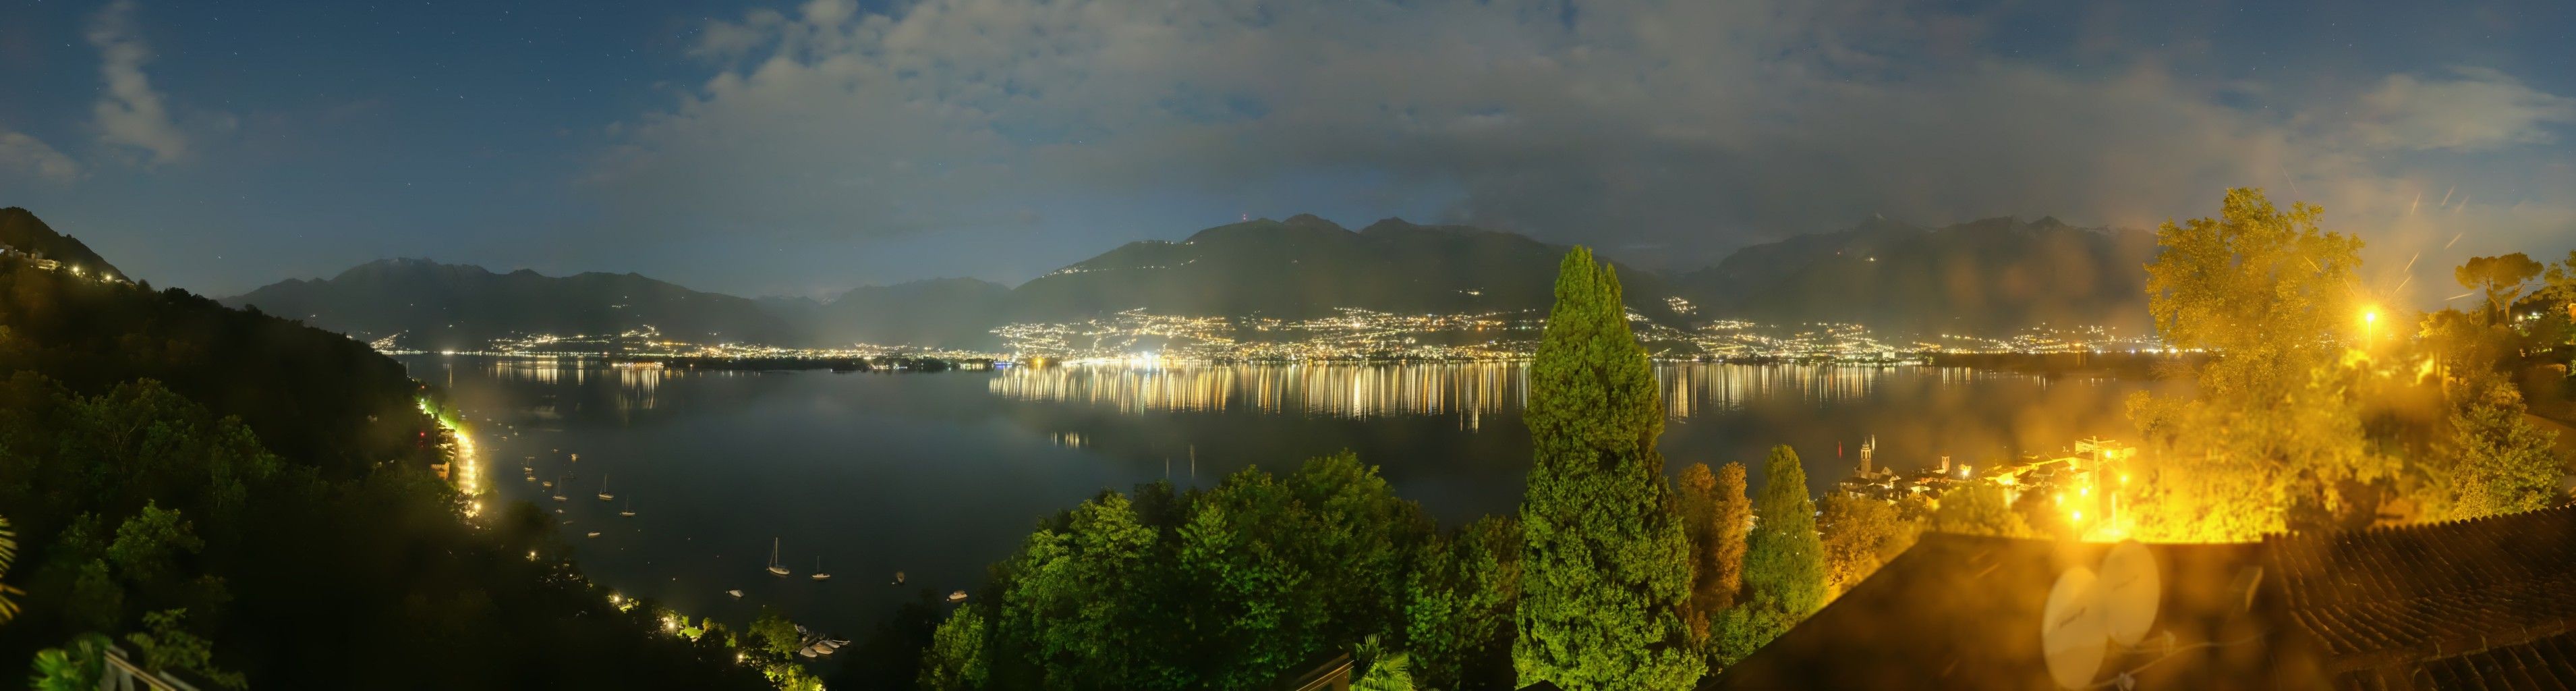 Gambarogno: Lago Maggiore